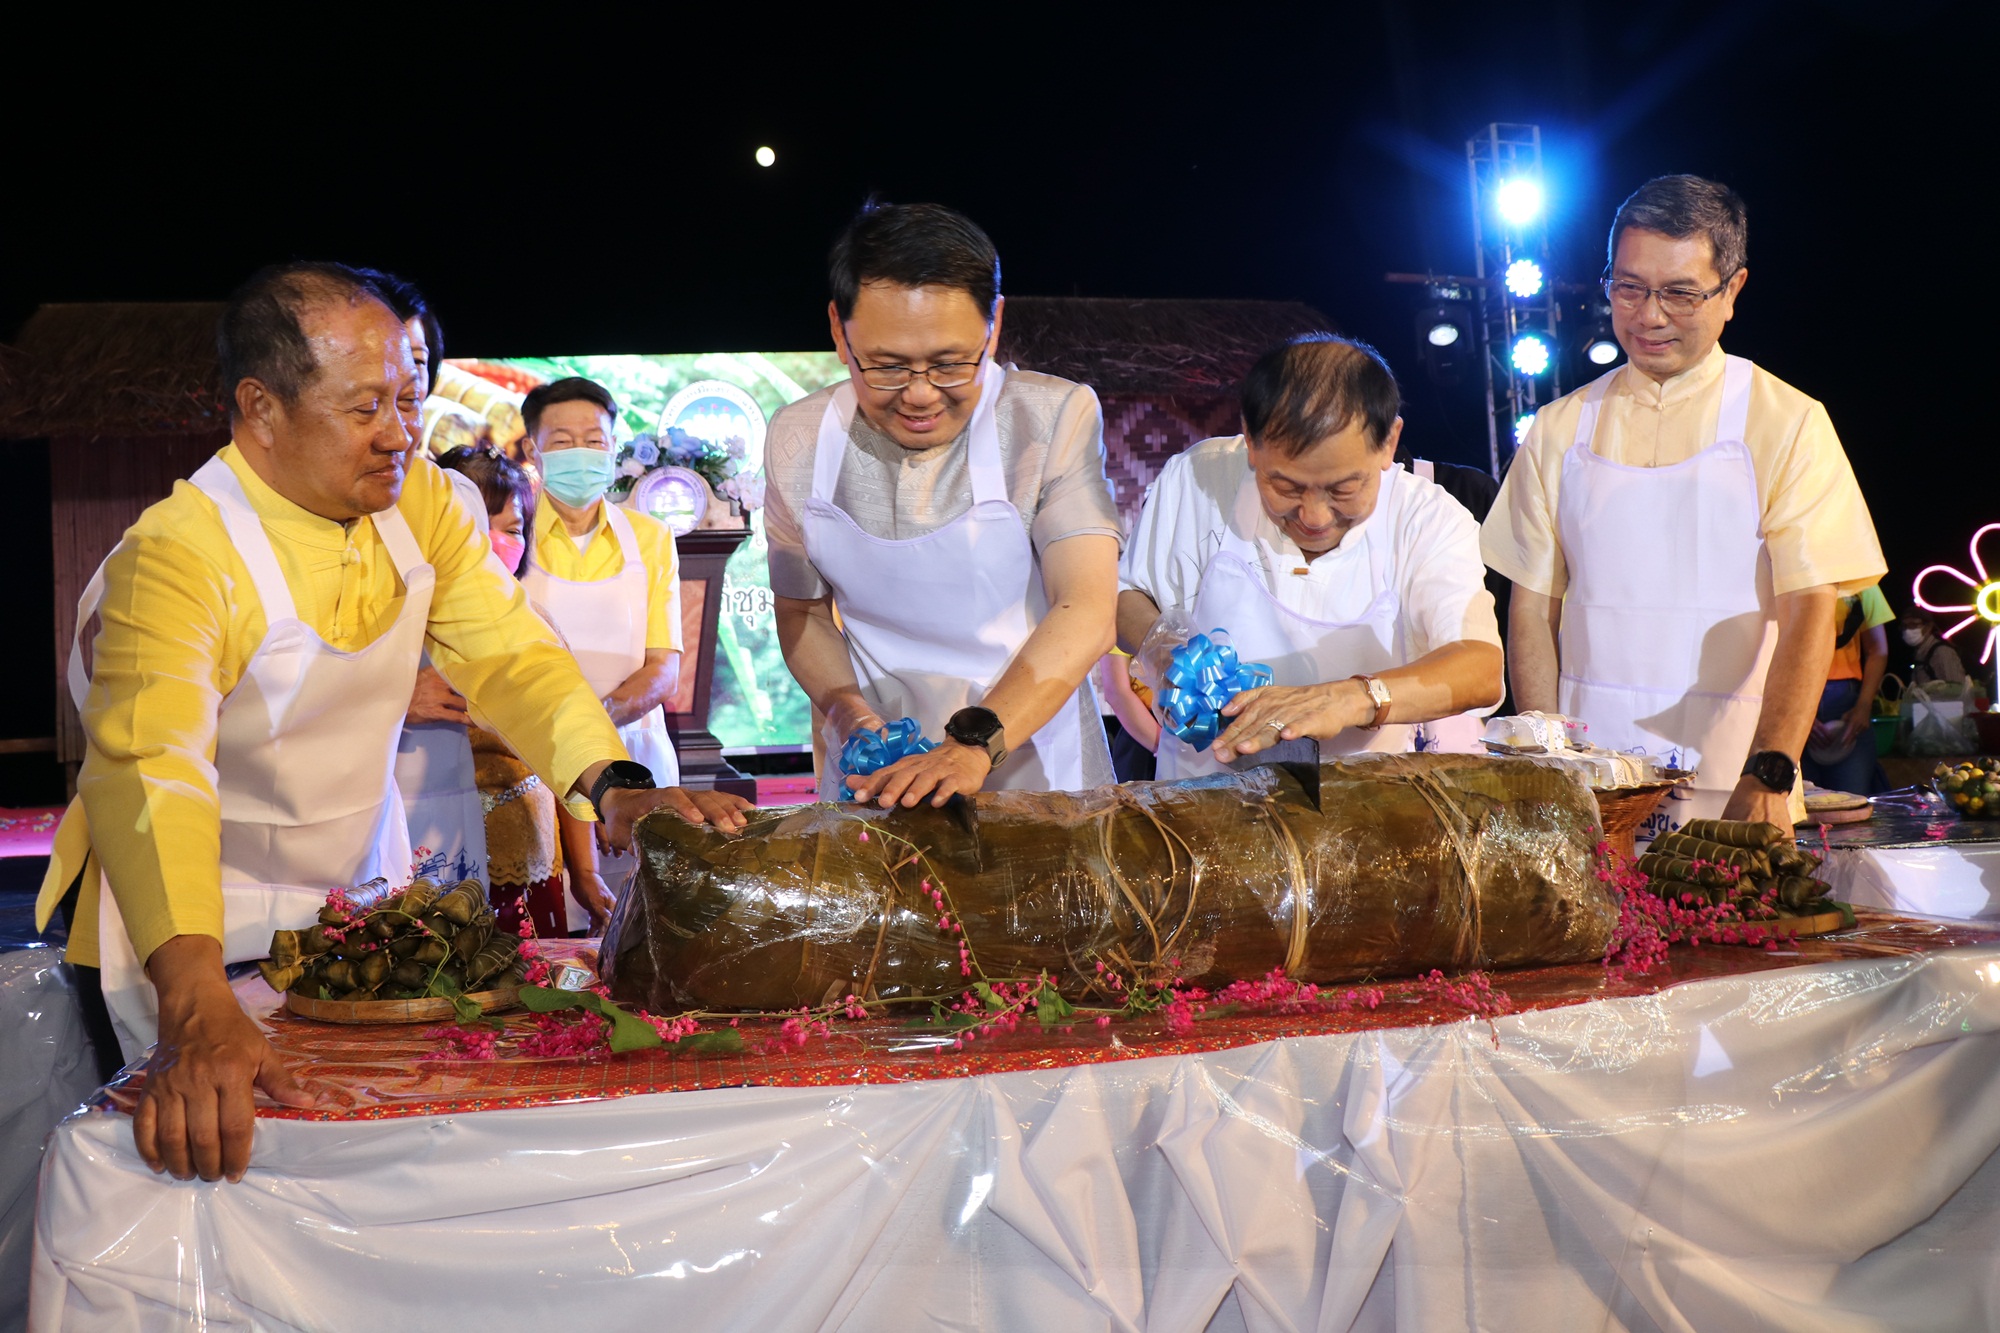 ผู้ว่าราชการจังหวัดกาญจนบุรีทำขนมมัดใต้ยักษ์ หวังให้เป็น soft power ส่งเสริมท่องเที่ยวด้านอาหาร